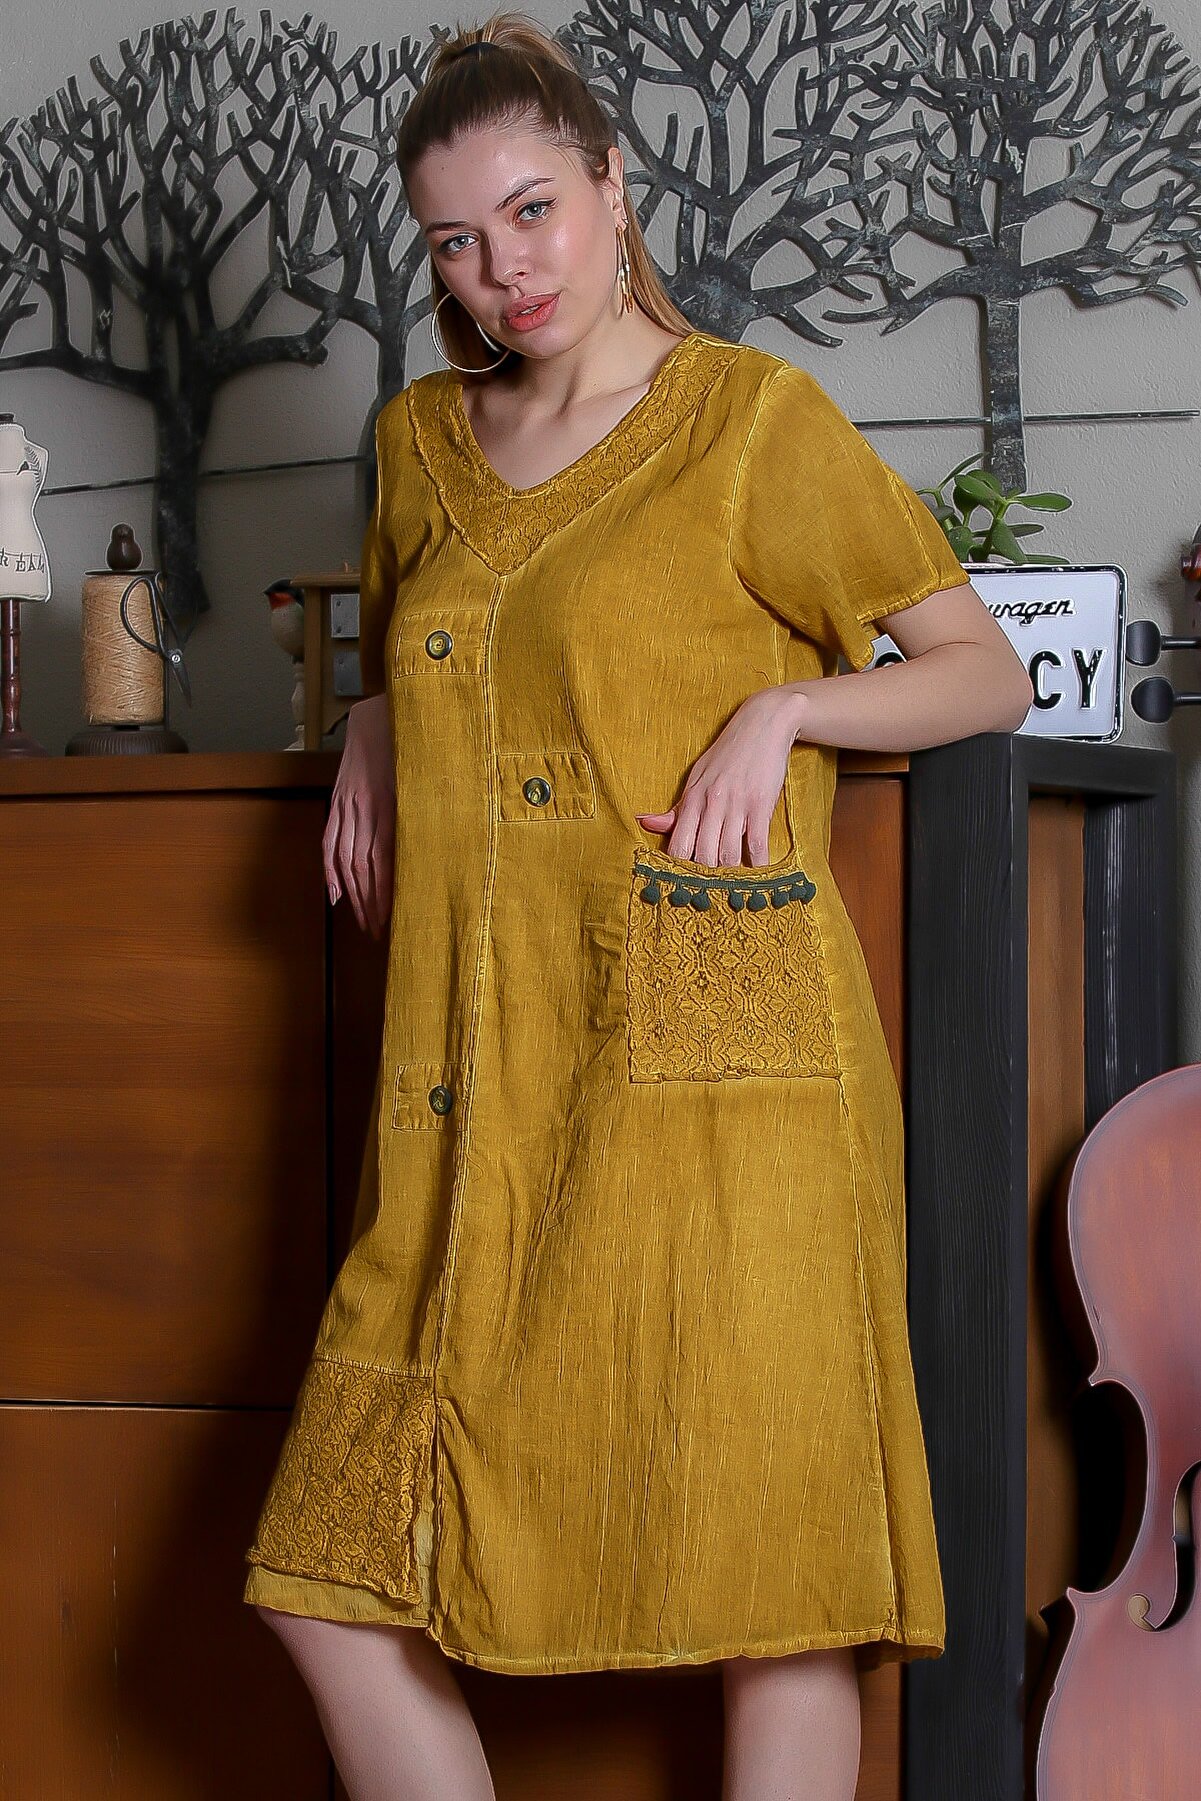 Chiccy Kadın Hardal Dantel Yaka Ve Cep Detaylı Süs Düğmeli Astarlı Yıkamalı Elbise M10160000EL95281